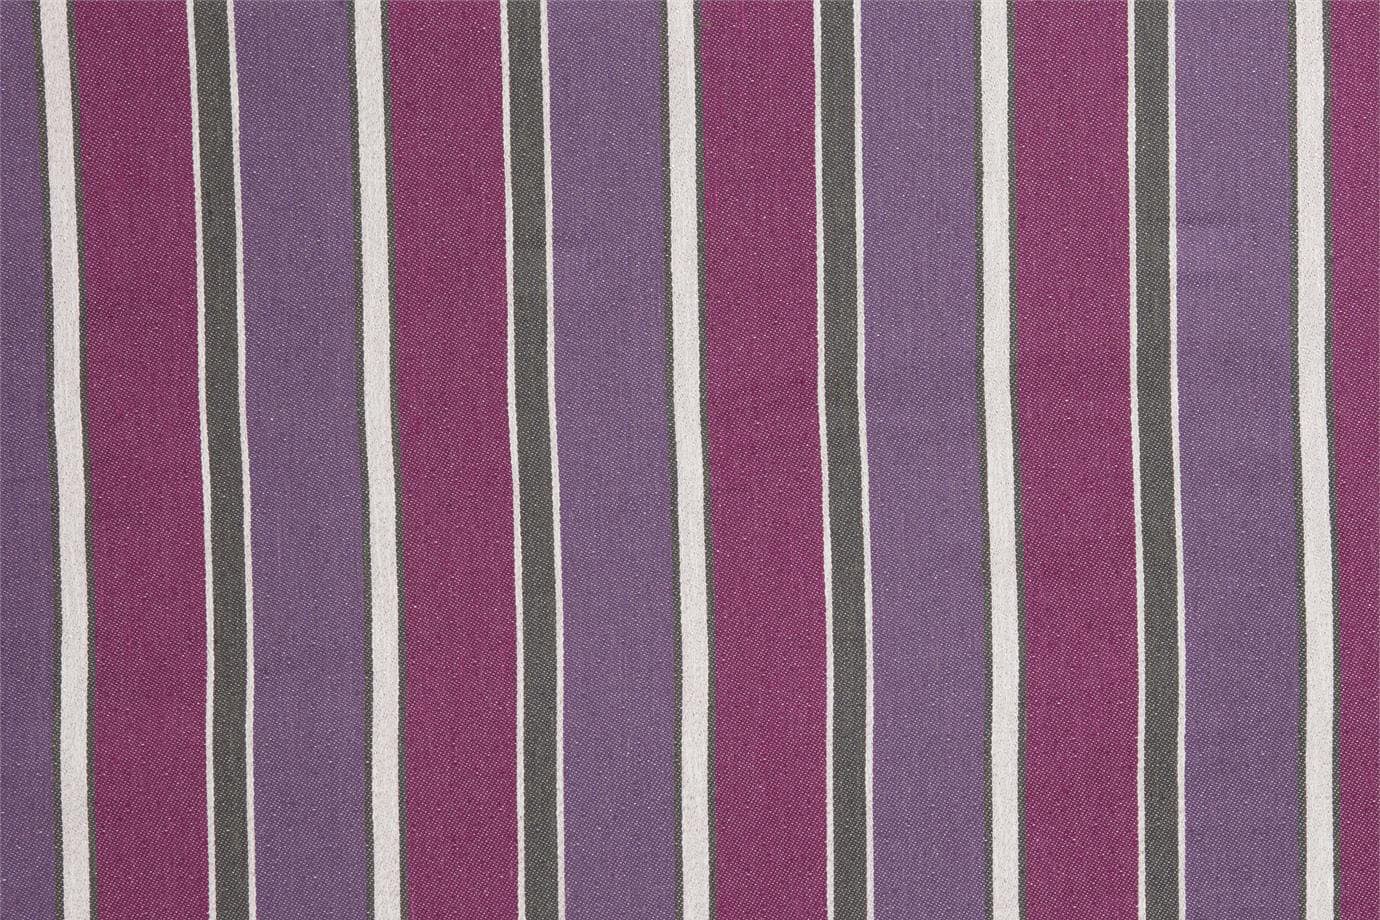 J1612 BRIGHELLA 004 Fuxia-violetto home decoration fabric